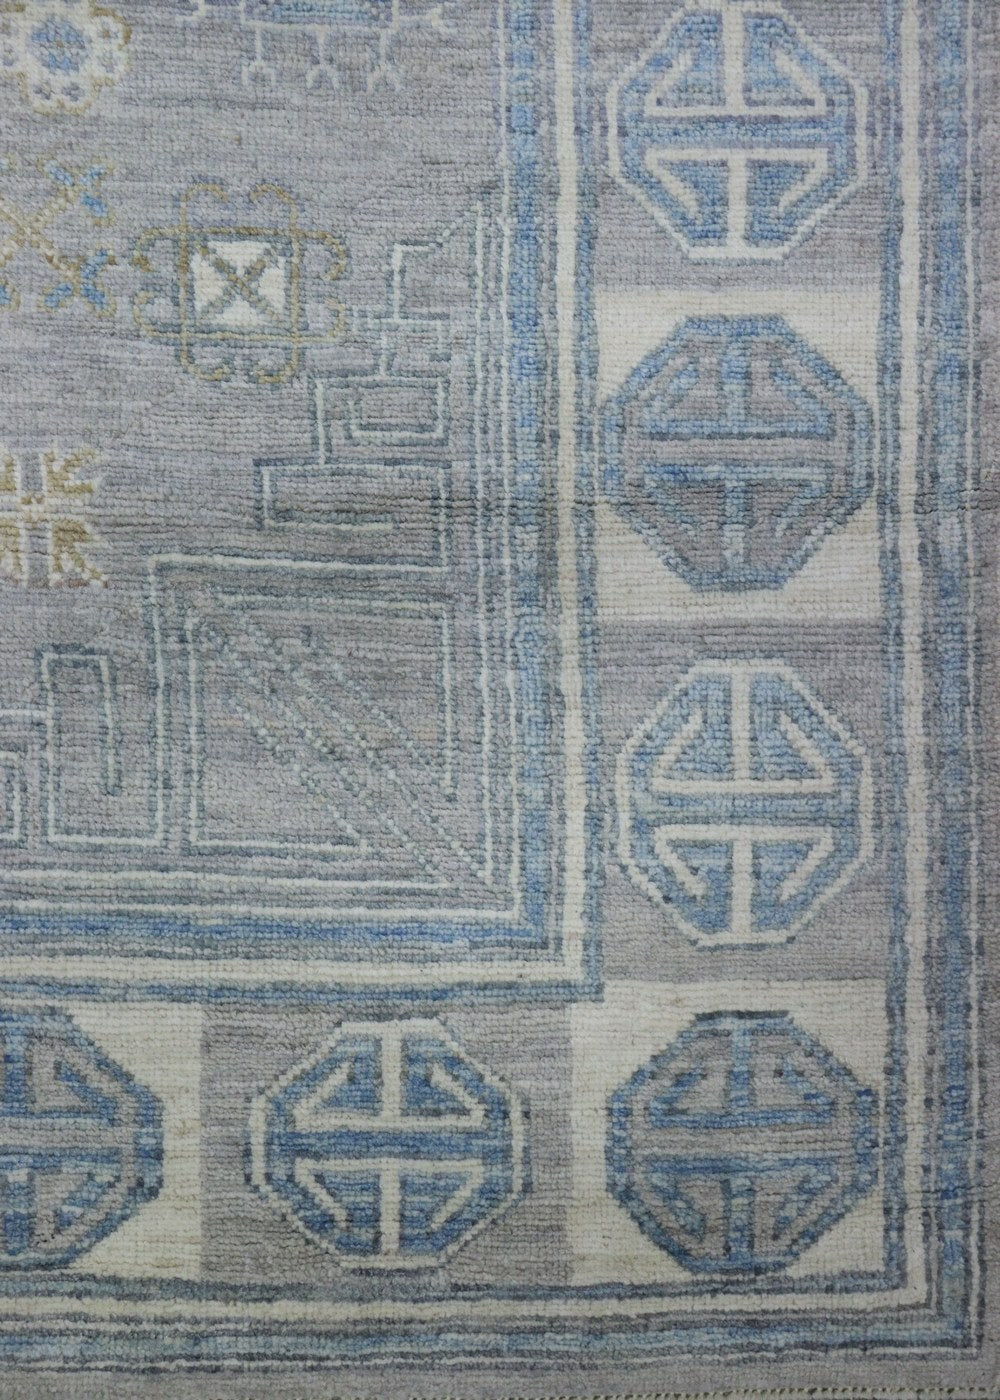 Khotan Handwoven Traditional Rug, J68199